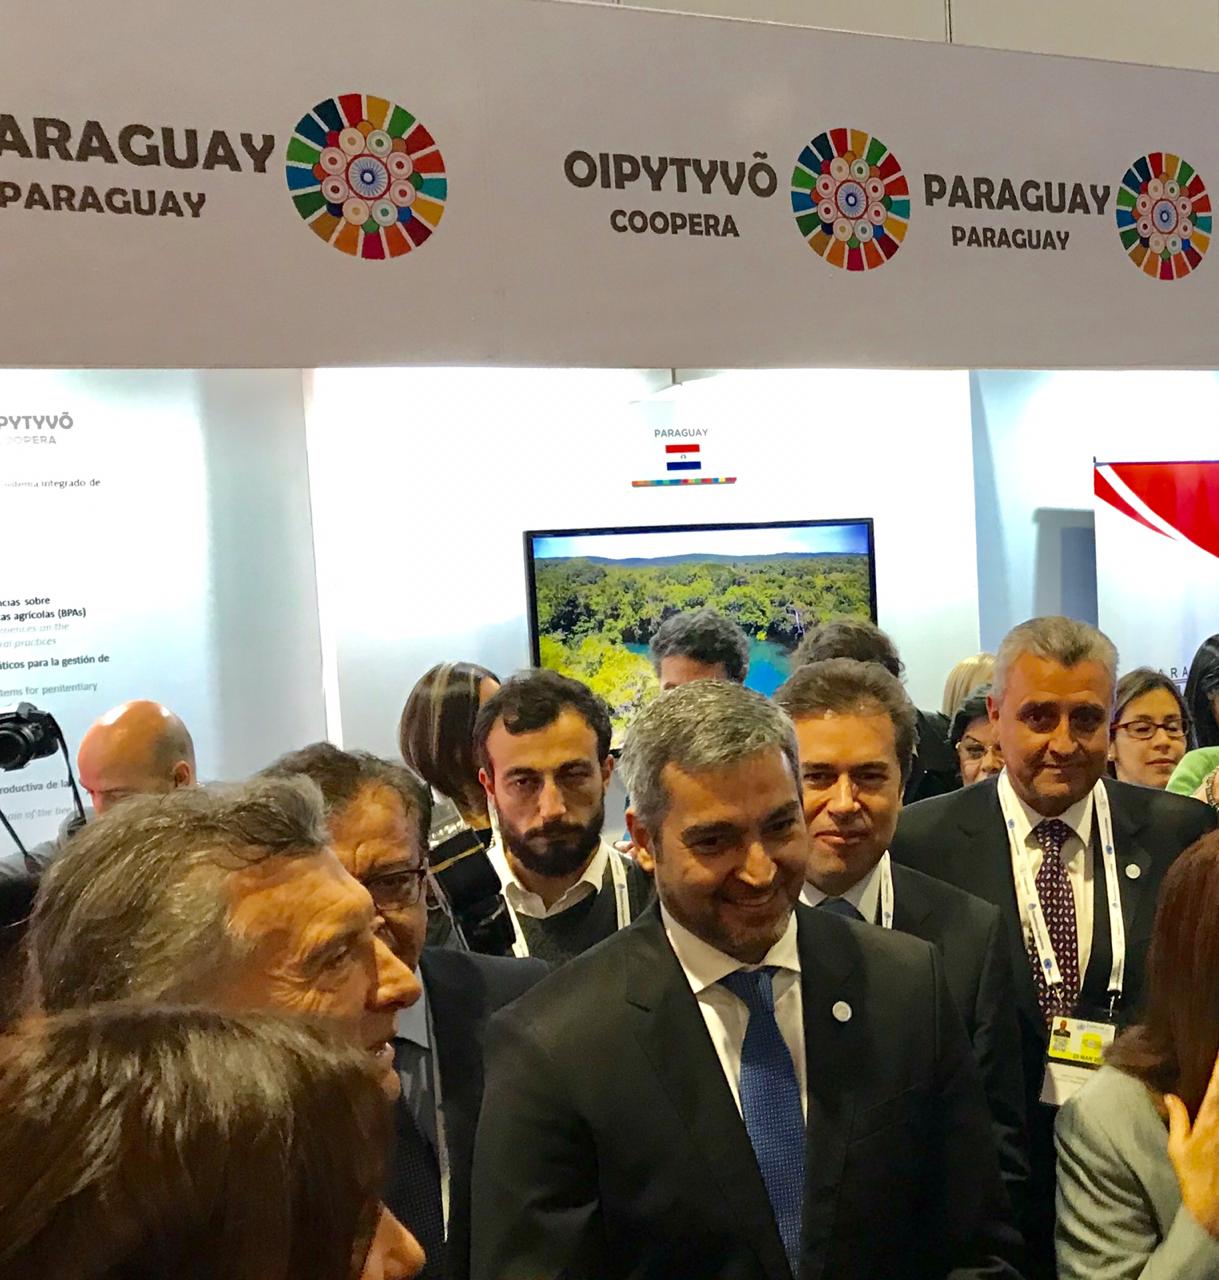 Presidentes Abdo Benítez y Macri visitaron el stand del Paraguay en la exposición de Cooperación Sur – Sur